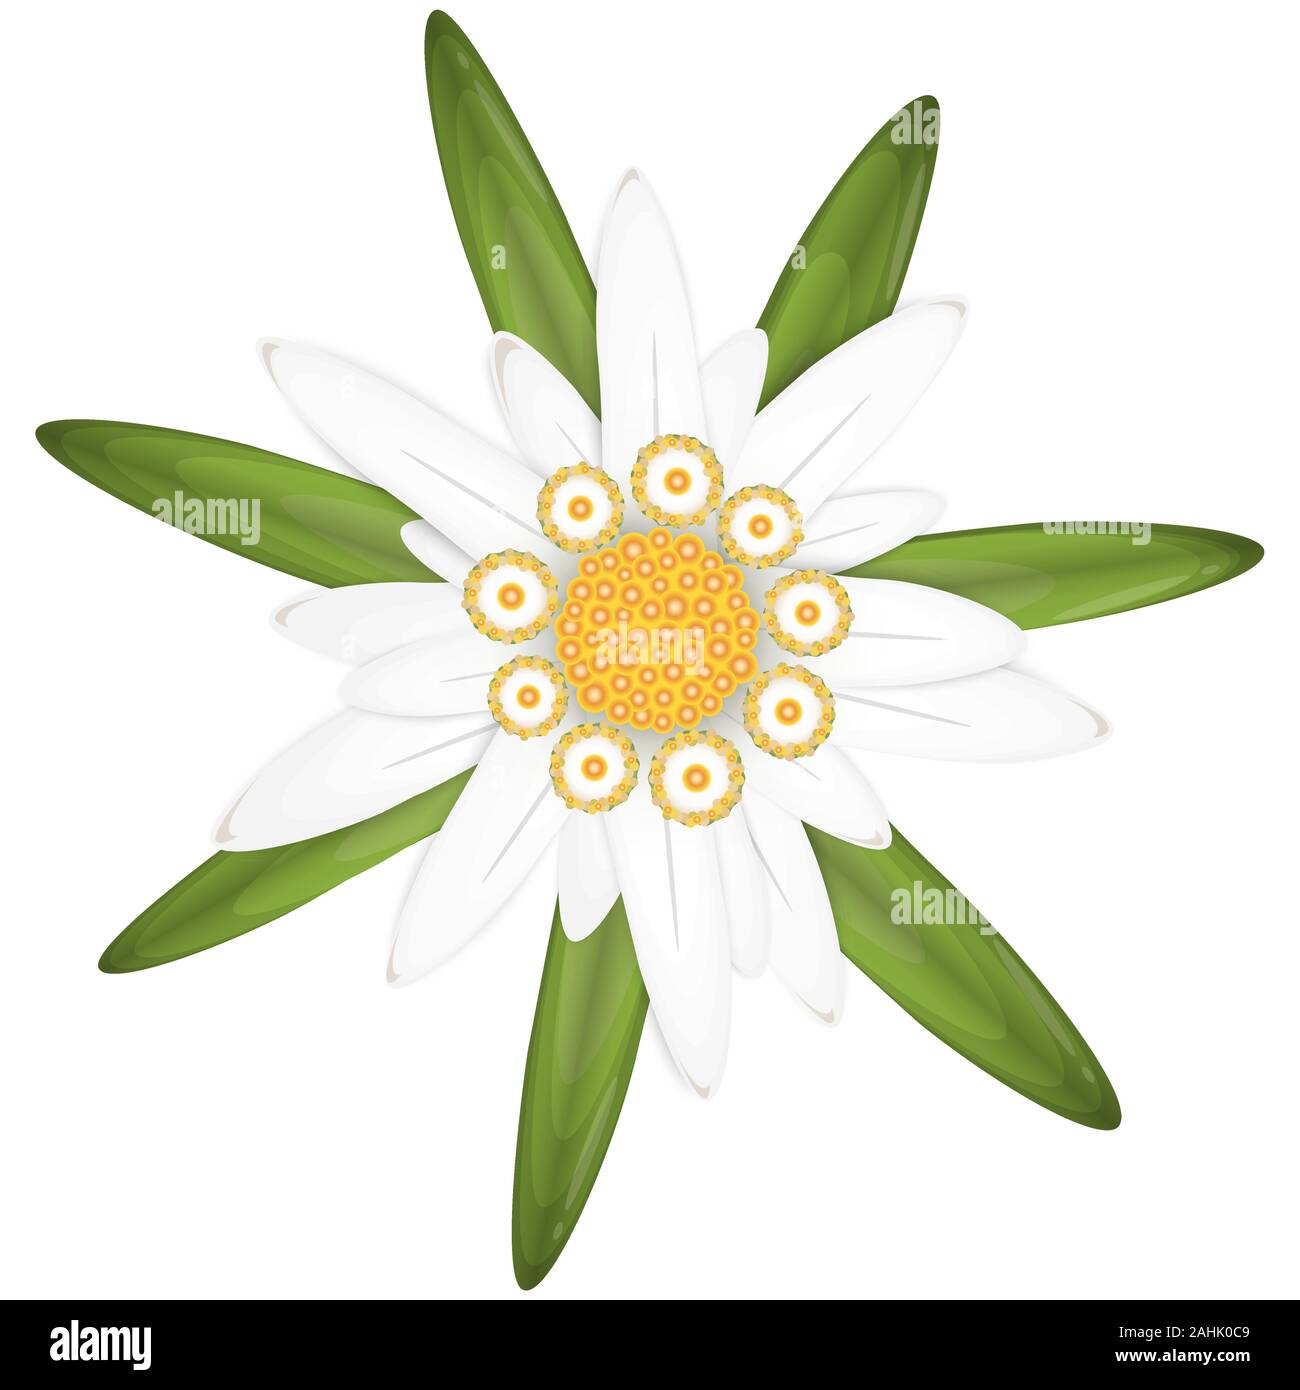 Vecteur EPS 10 edelweiss isolé fleur, symbole des Alpes et de l'Oktoberfest allemand Illustration de Vecteur